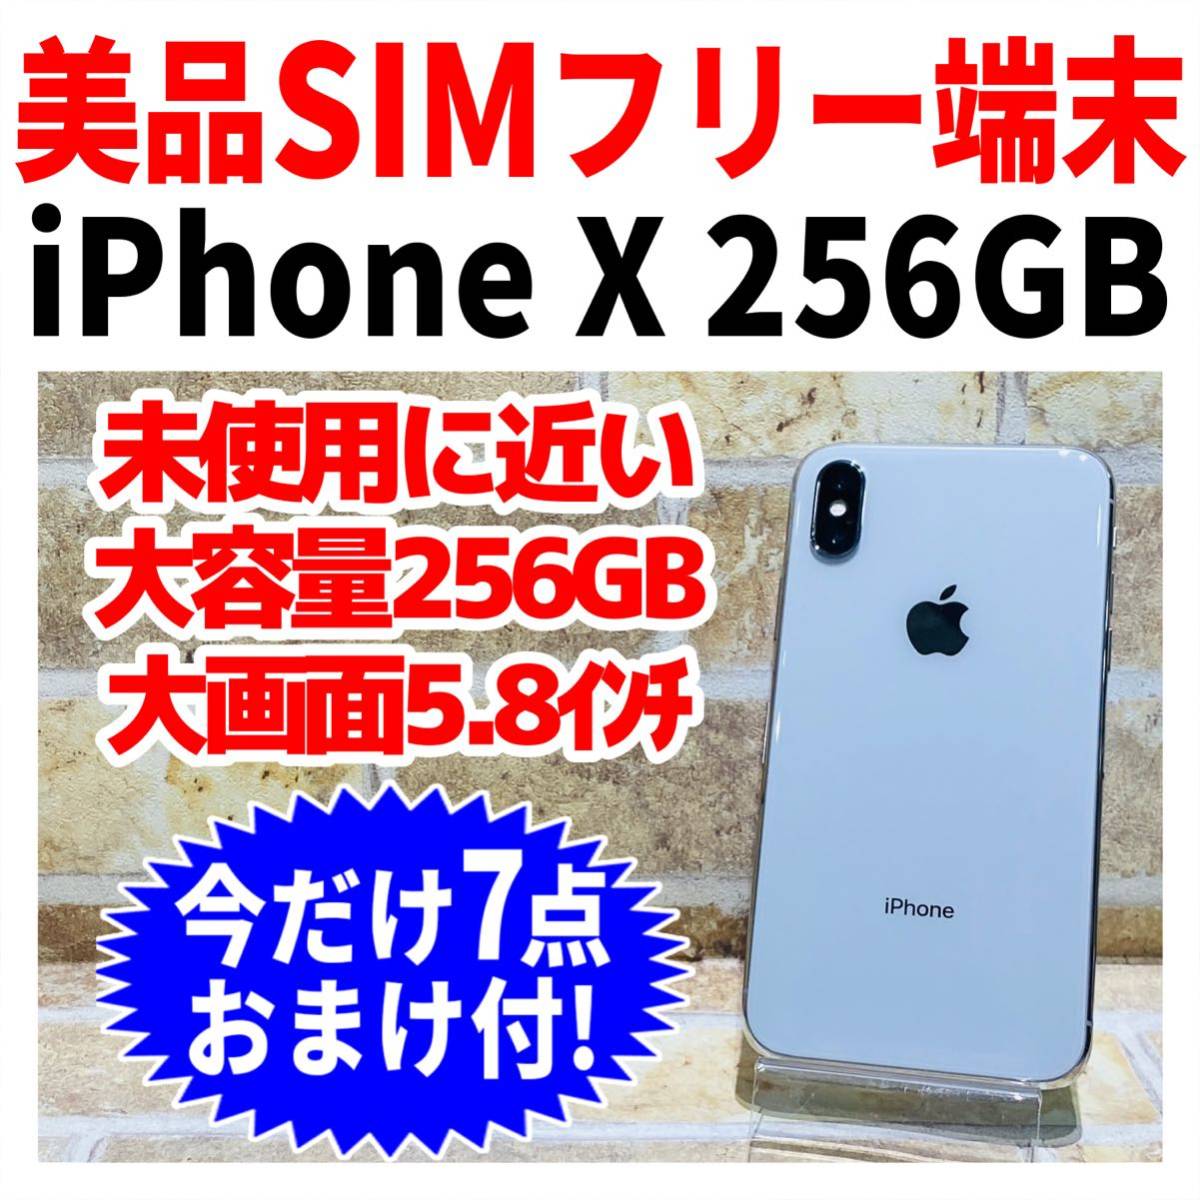 美品 SIMフリー iPhoneX 256GB シルバー 新品電バッテリー-siegfried